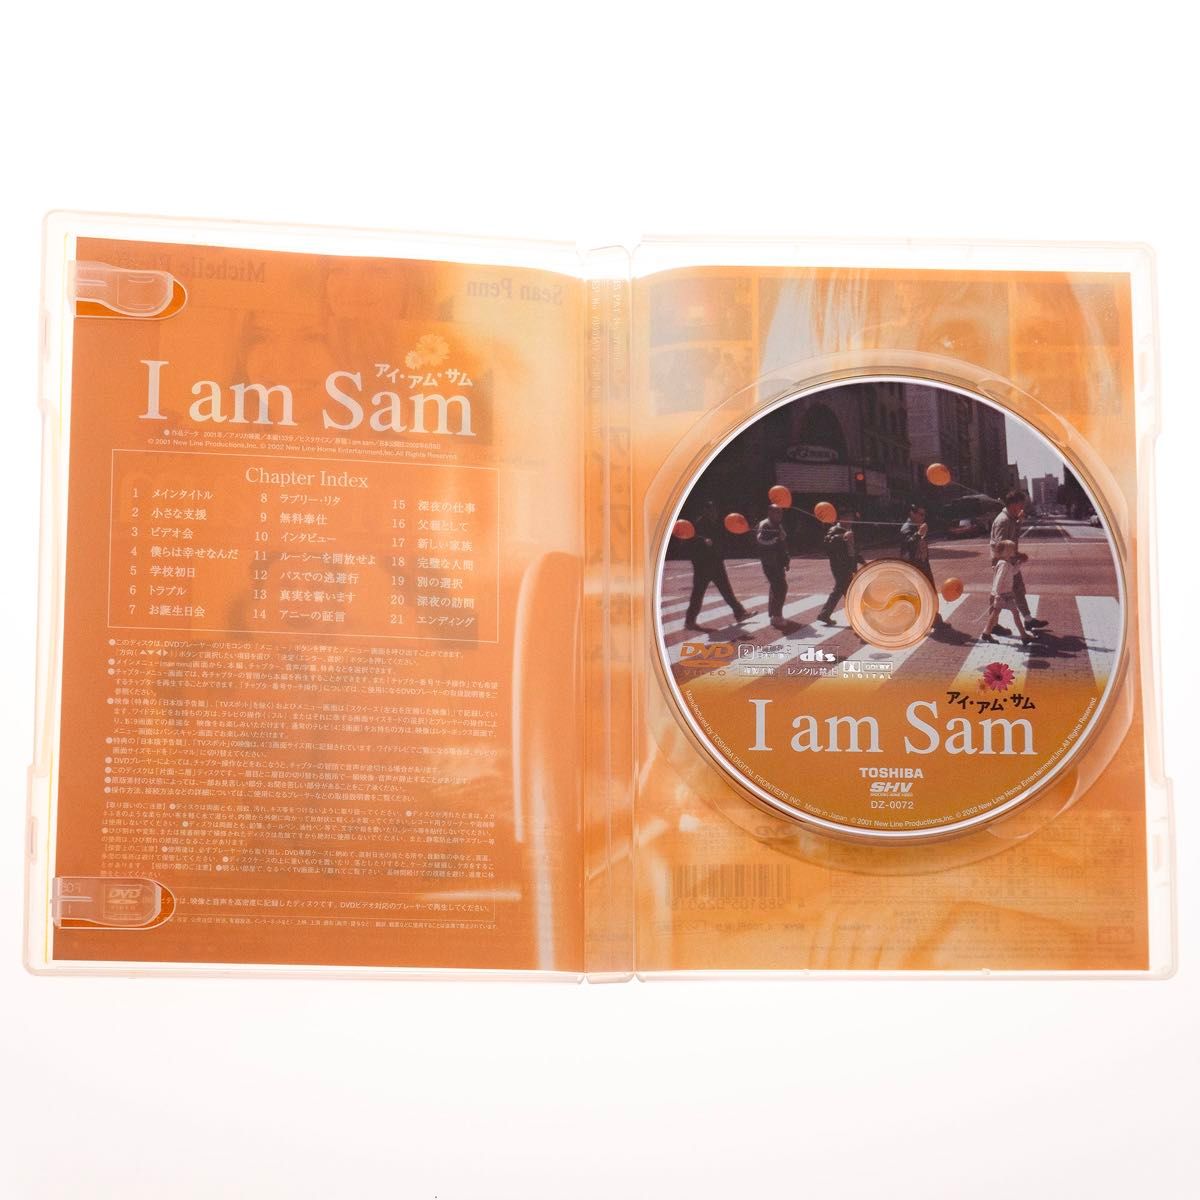 【DVD】I am Sam 初回限定生産 フォトブックレット封入 ショーン・ペン ミシェル・ファイファー DZ-0072